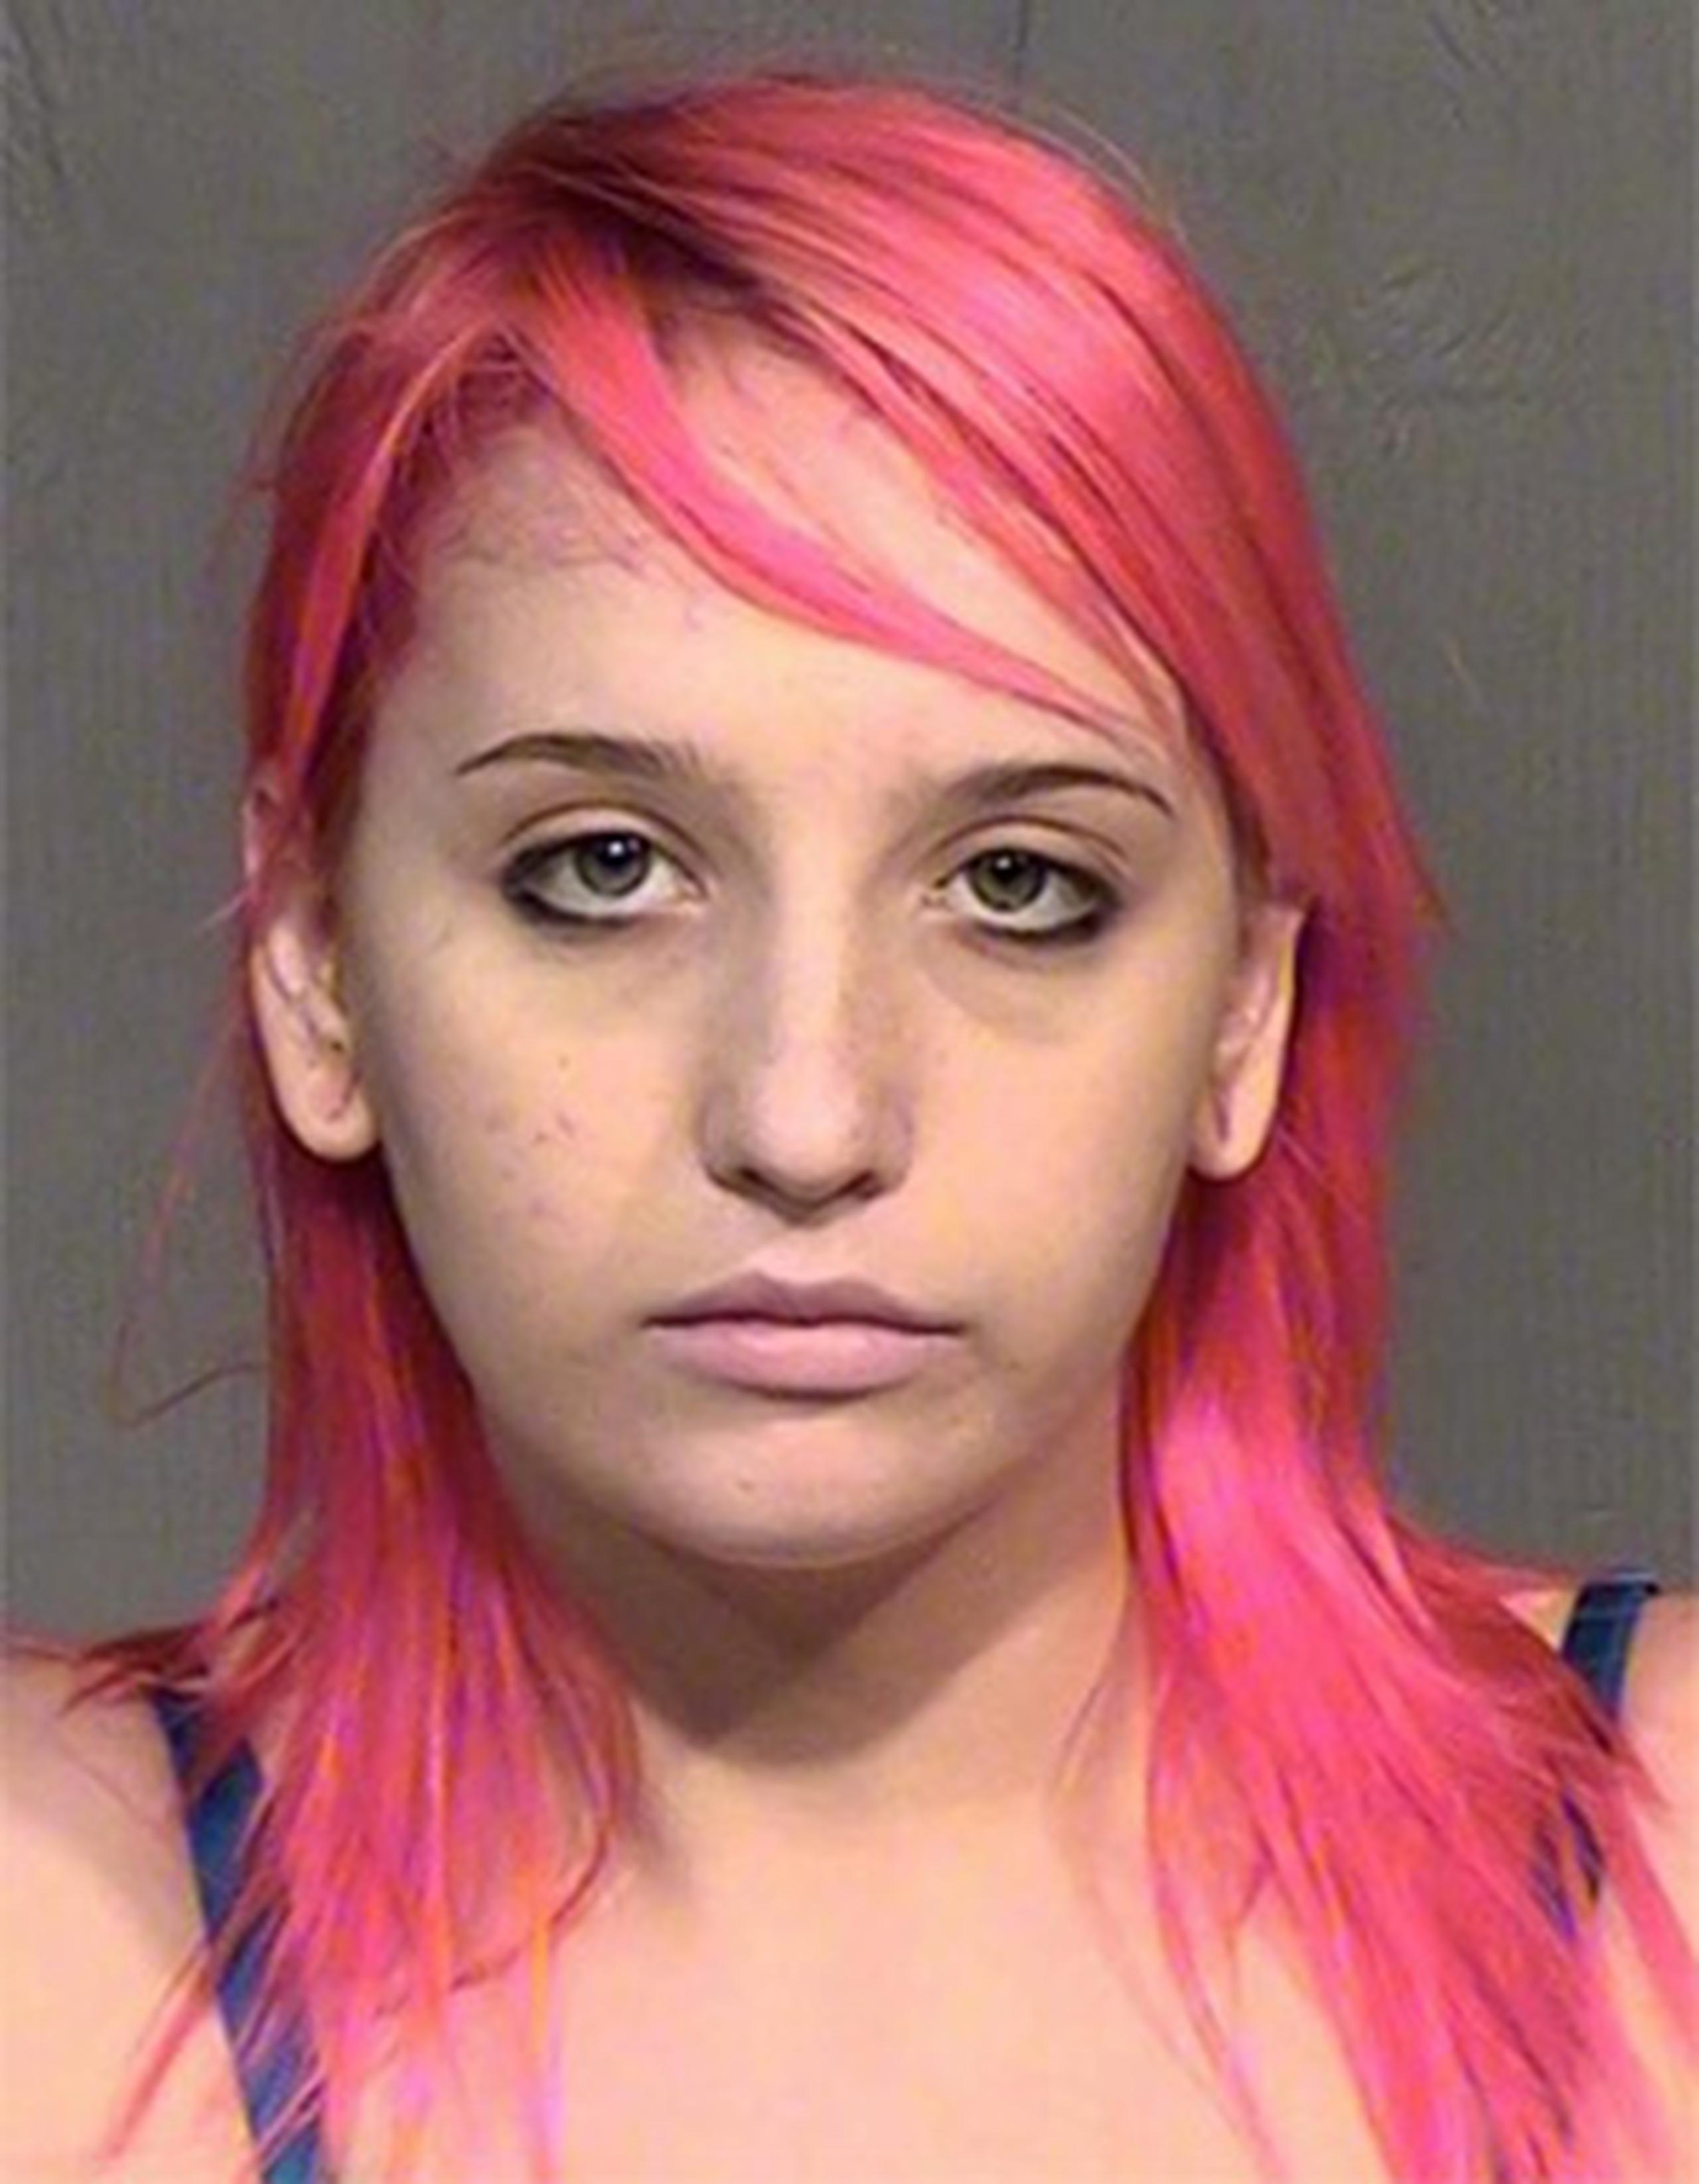 Catalina Clouser fue arrestada al regresar a la escena buscando al niño. (Phoenix Police Department)